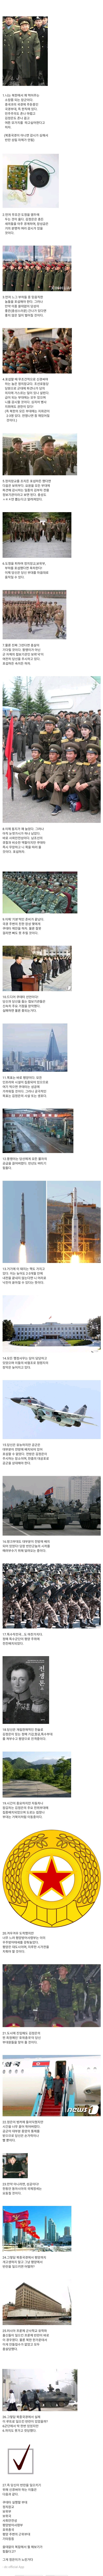 북한에서 쿠데타를 일으켜보자.jpg